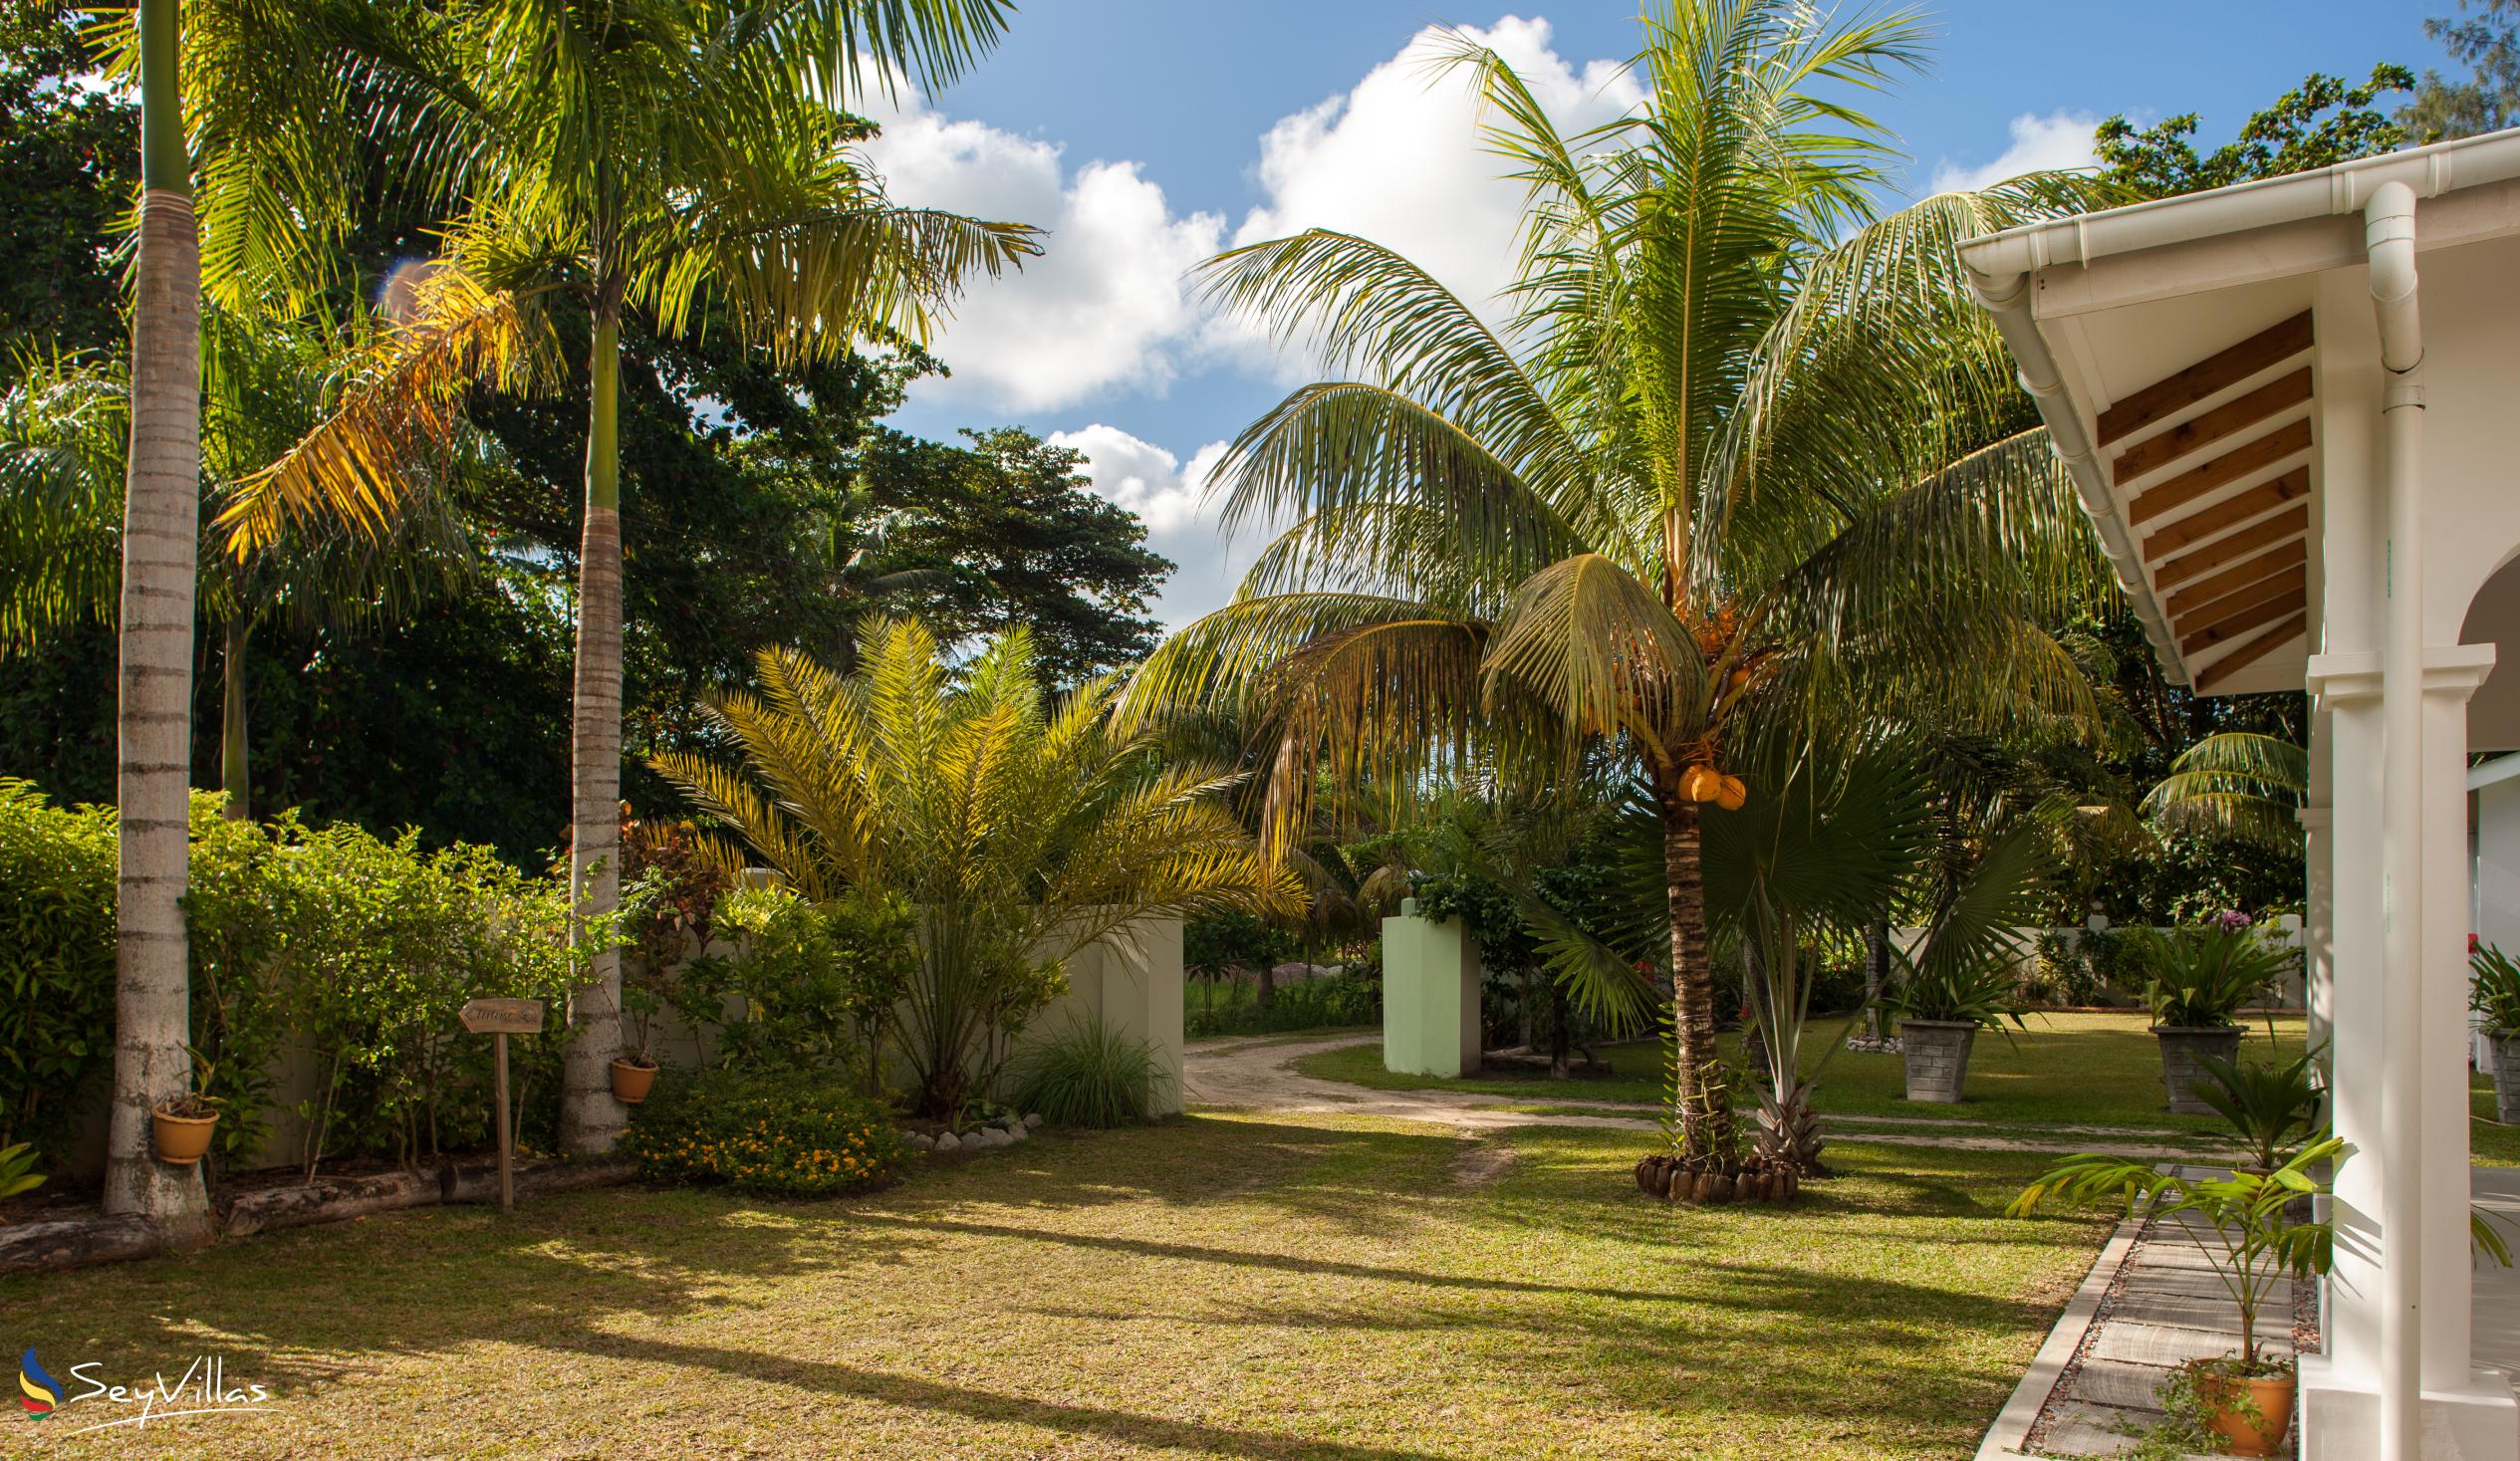 Foto 17: La Modestie Villa - Aussenbereich - Praslin (Seychellen)